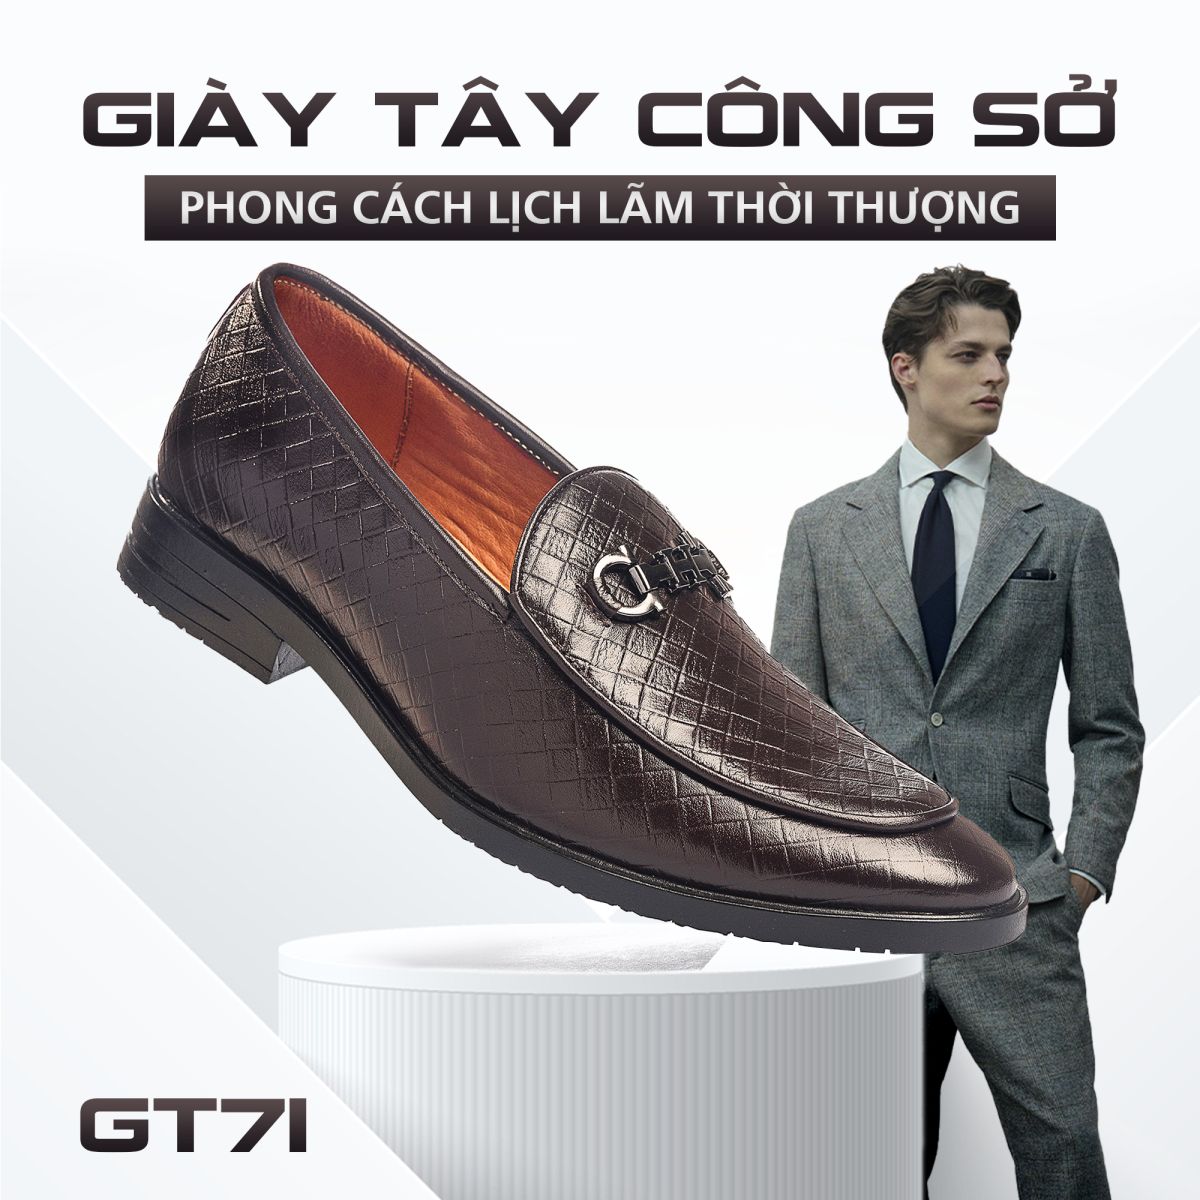 Giày lười nam GT71 cao cấp tại Timan